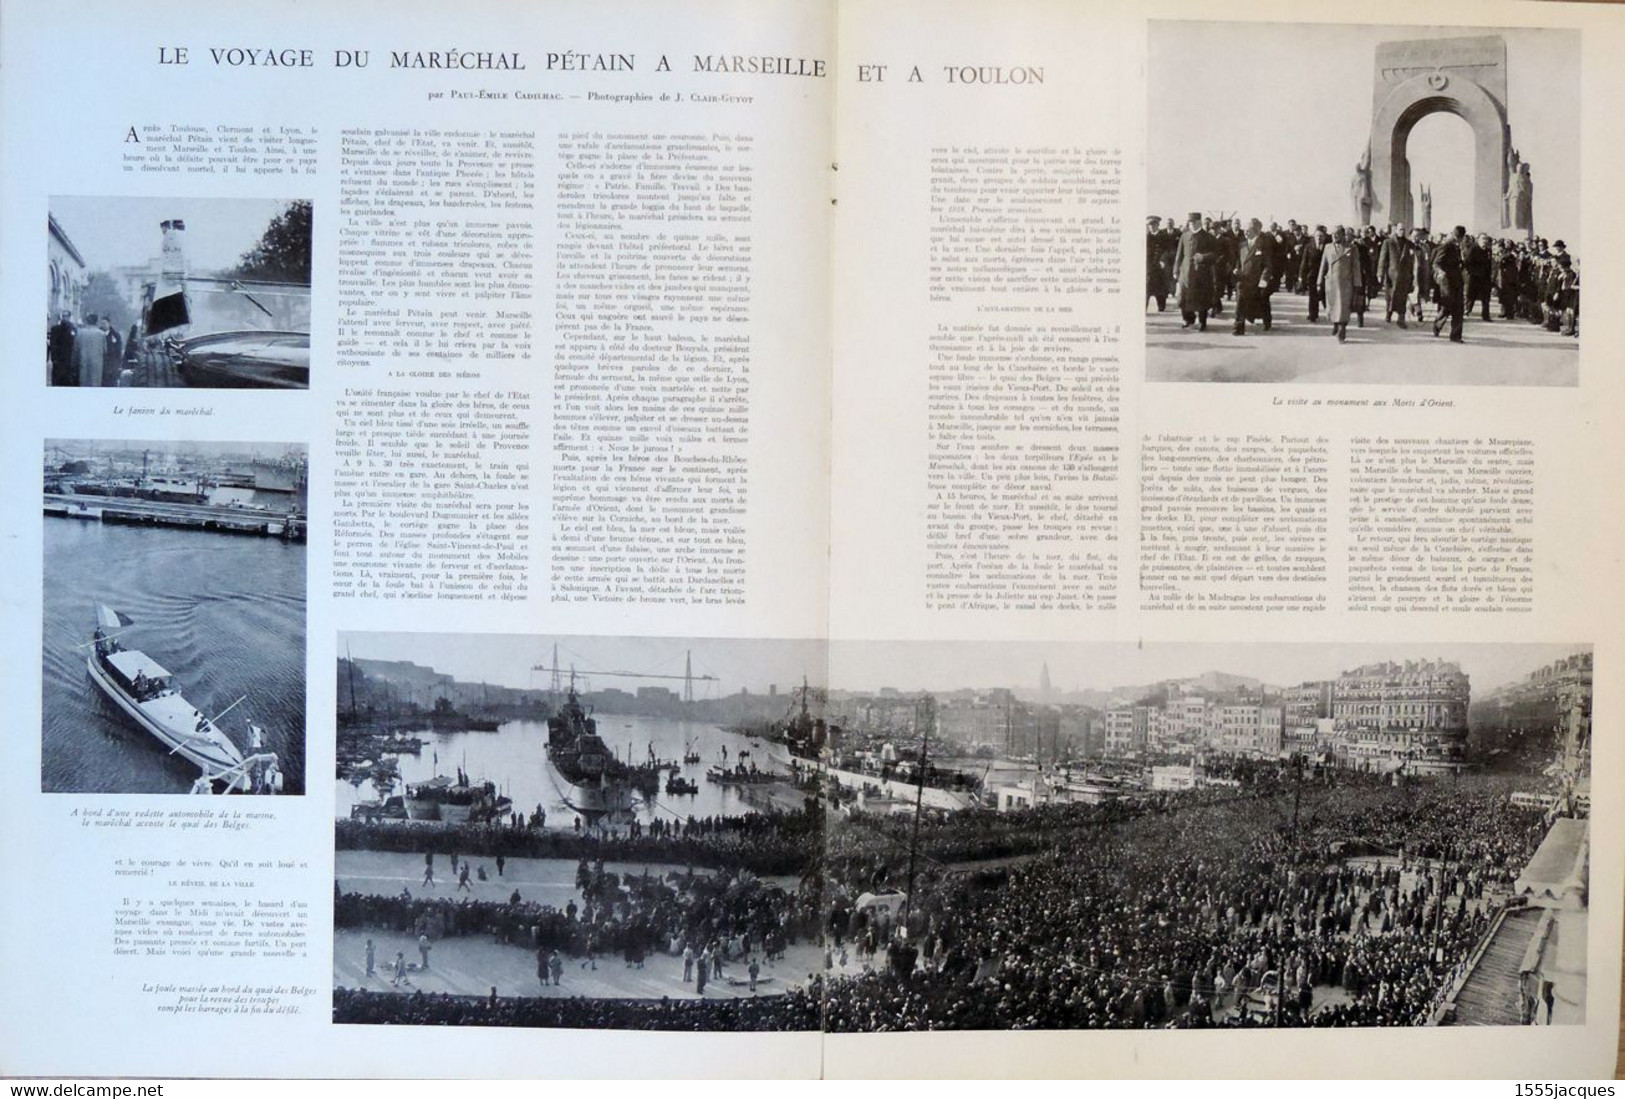 L'ILLUSTRATION N° 5101 14-12-1940 PÉTAIN GUILLAUMET CHIAPPE NAPOLÉON 1er INVALIDES ANOUILH CASTETS SELLIER BOURRELIER